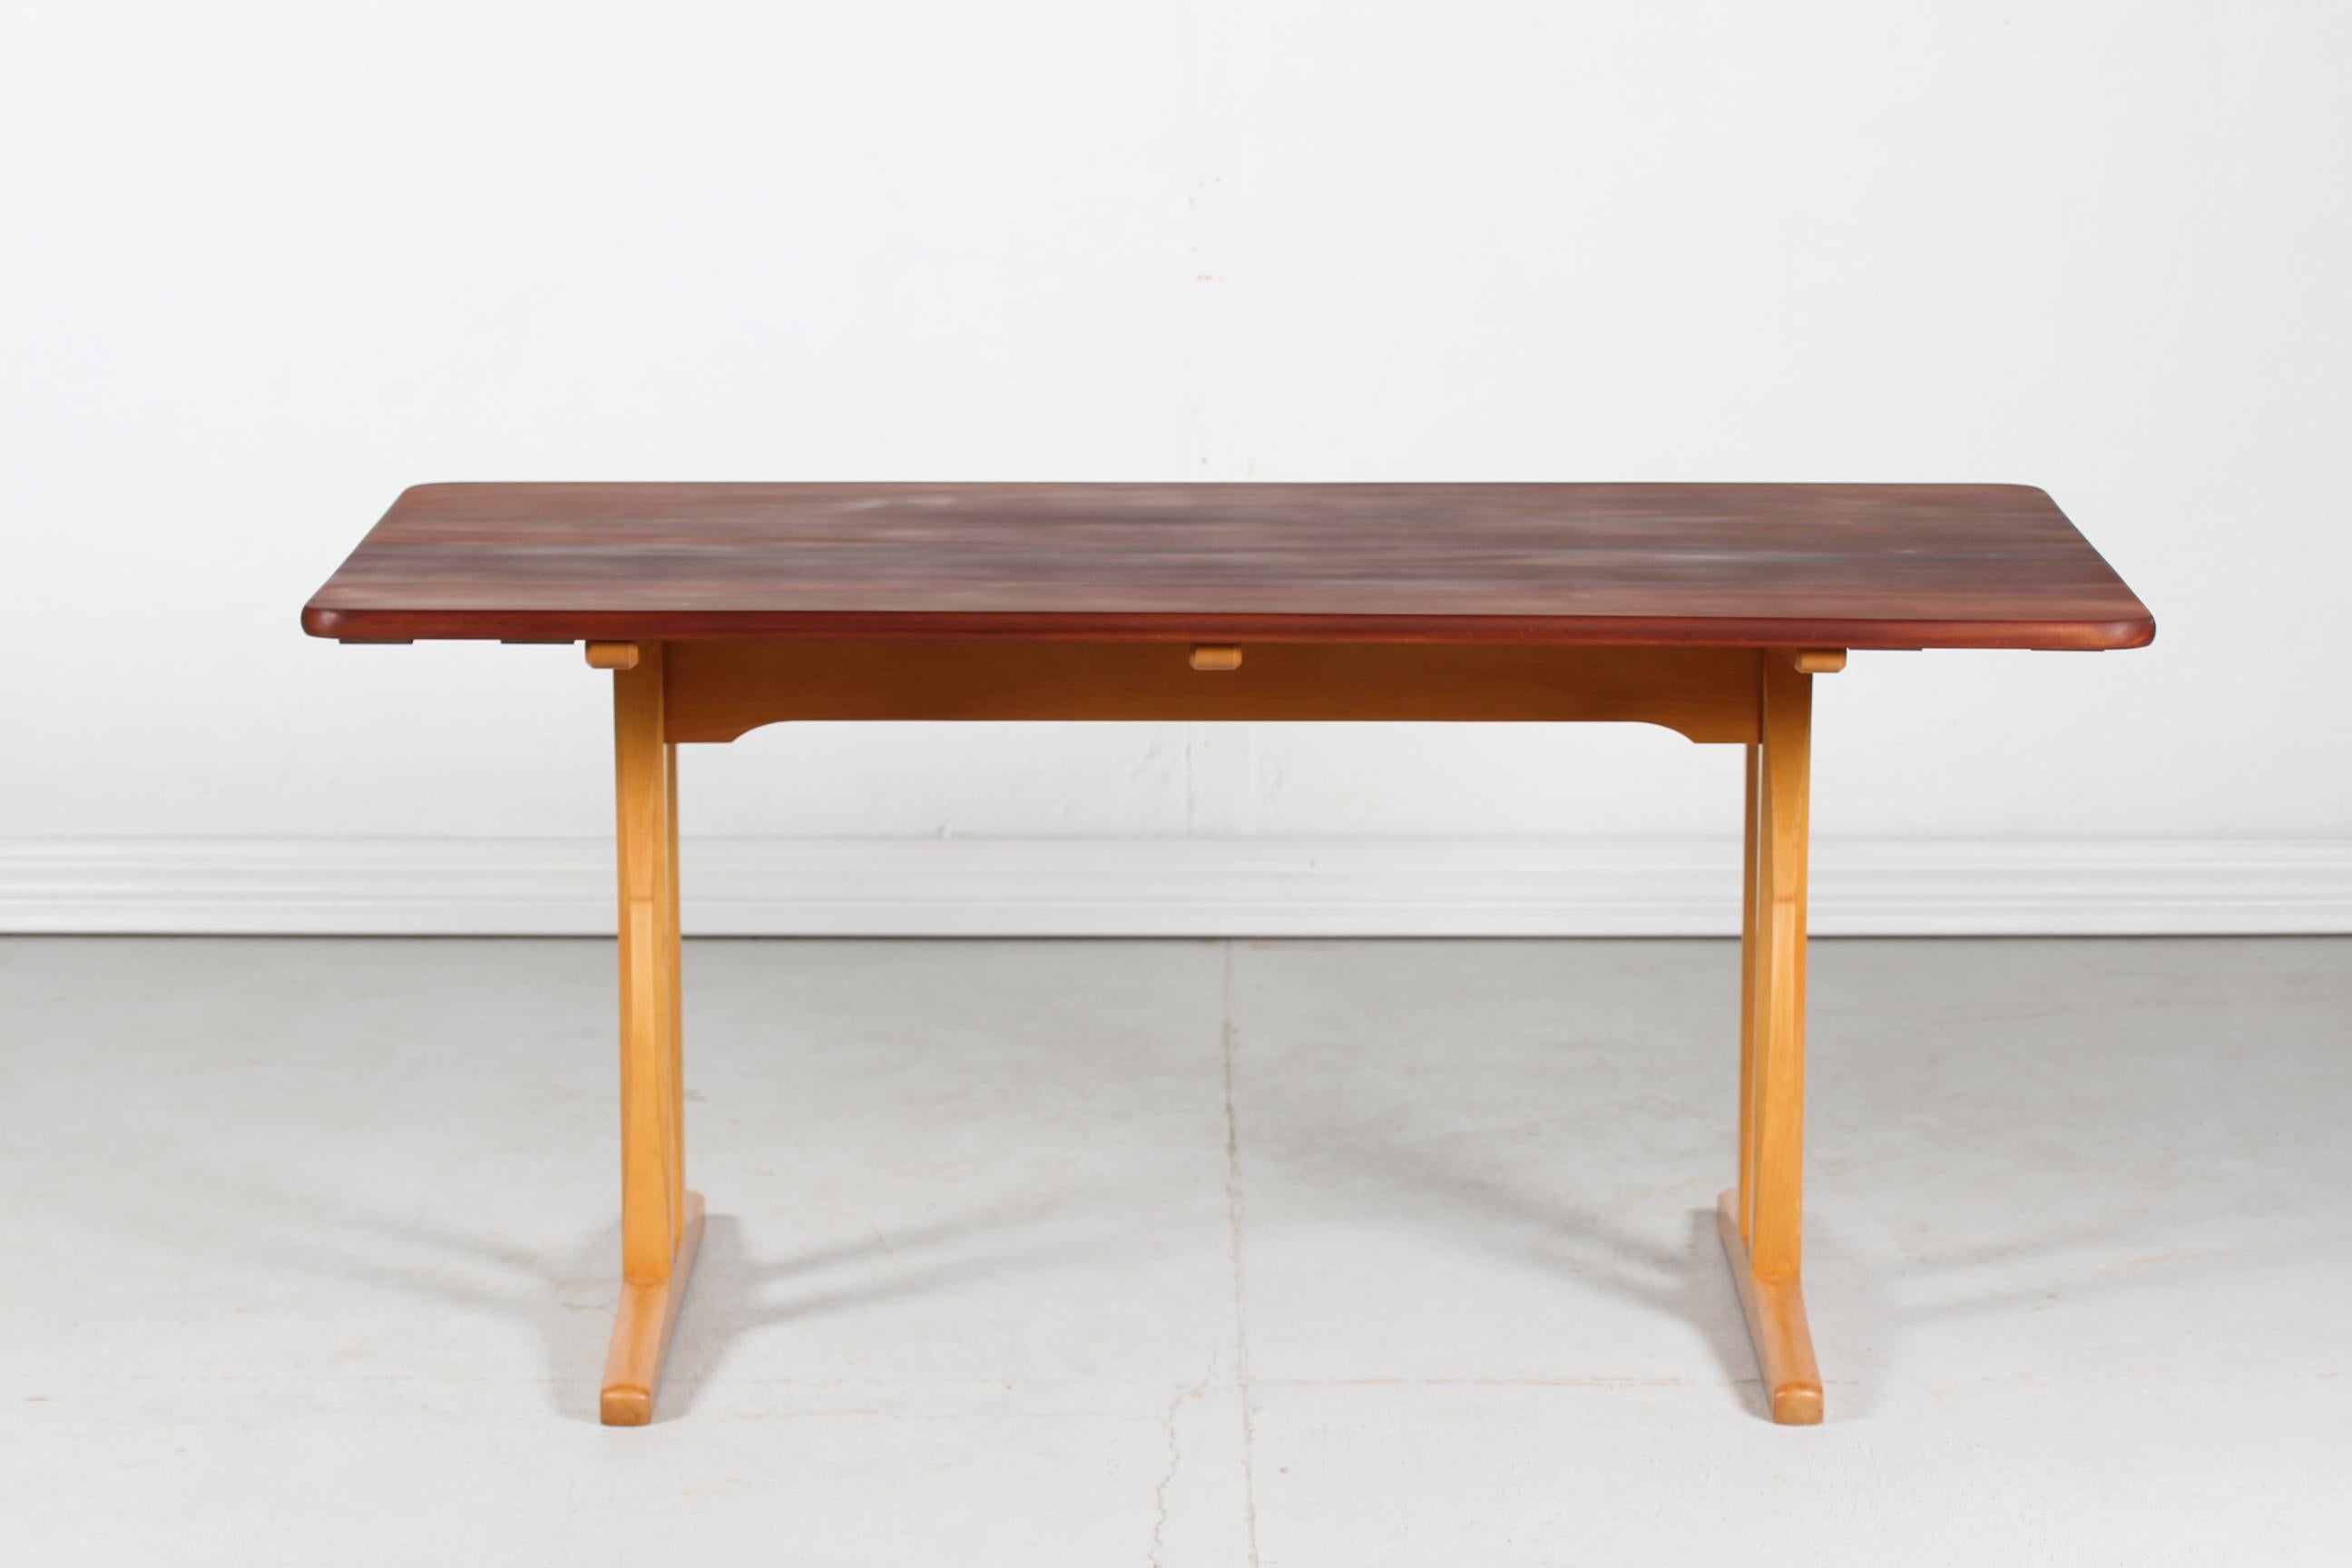 Rare table shaker danoise vintage Børge Mogensen modèle C 18 fabriquée par le fabricant de meubles danois FBD Møbler. 
Le modèle C.I.C. 18 a été conçu en 1947 et fabriqué dans les années 50

Le plateau est en teck massif traité à l'huile et la